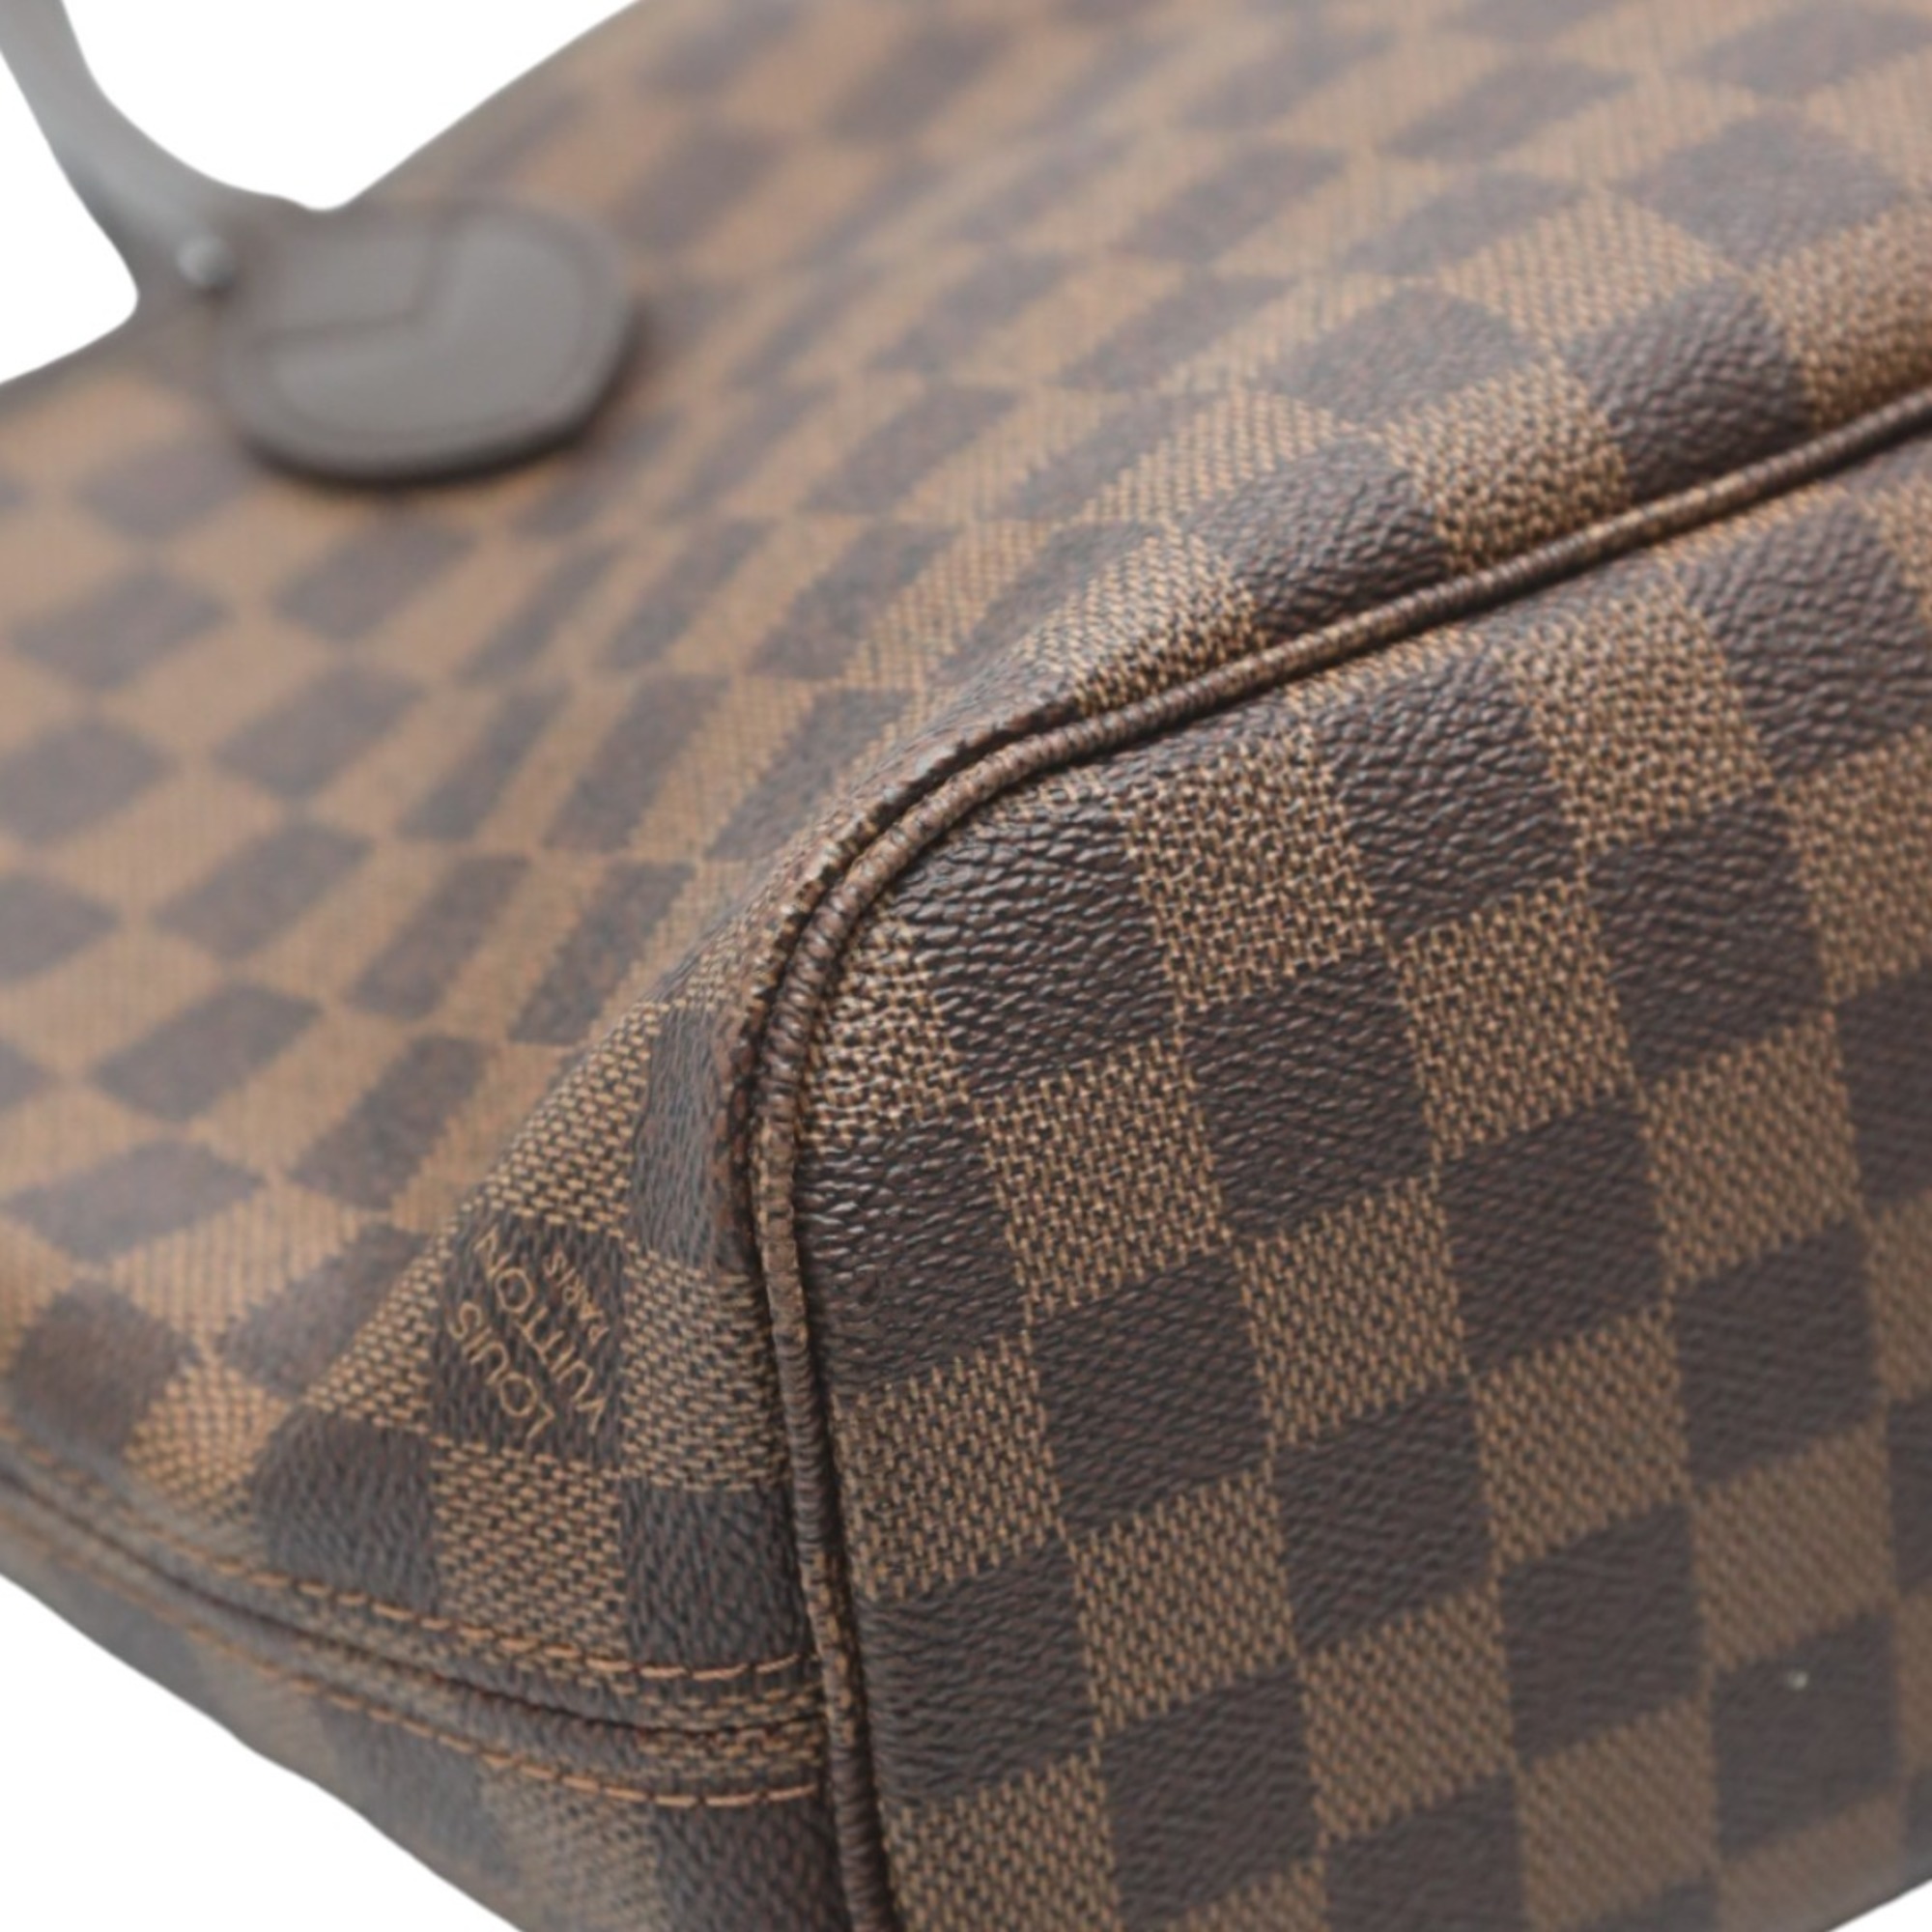 Louis Vuitton LOUIS VUITTON Handbag Damier Neverfull PM Canvas N51109 Brown LV